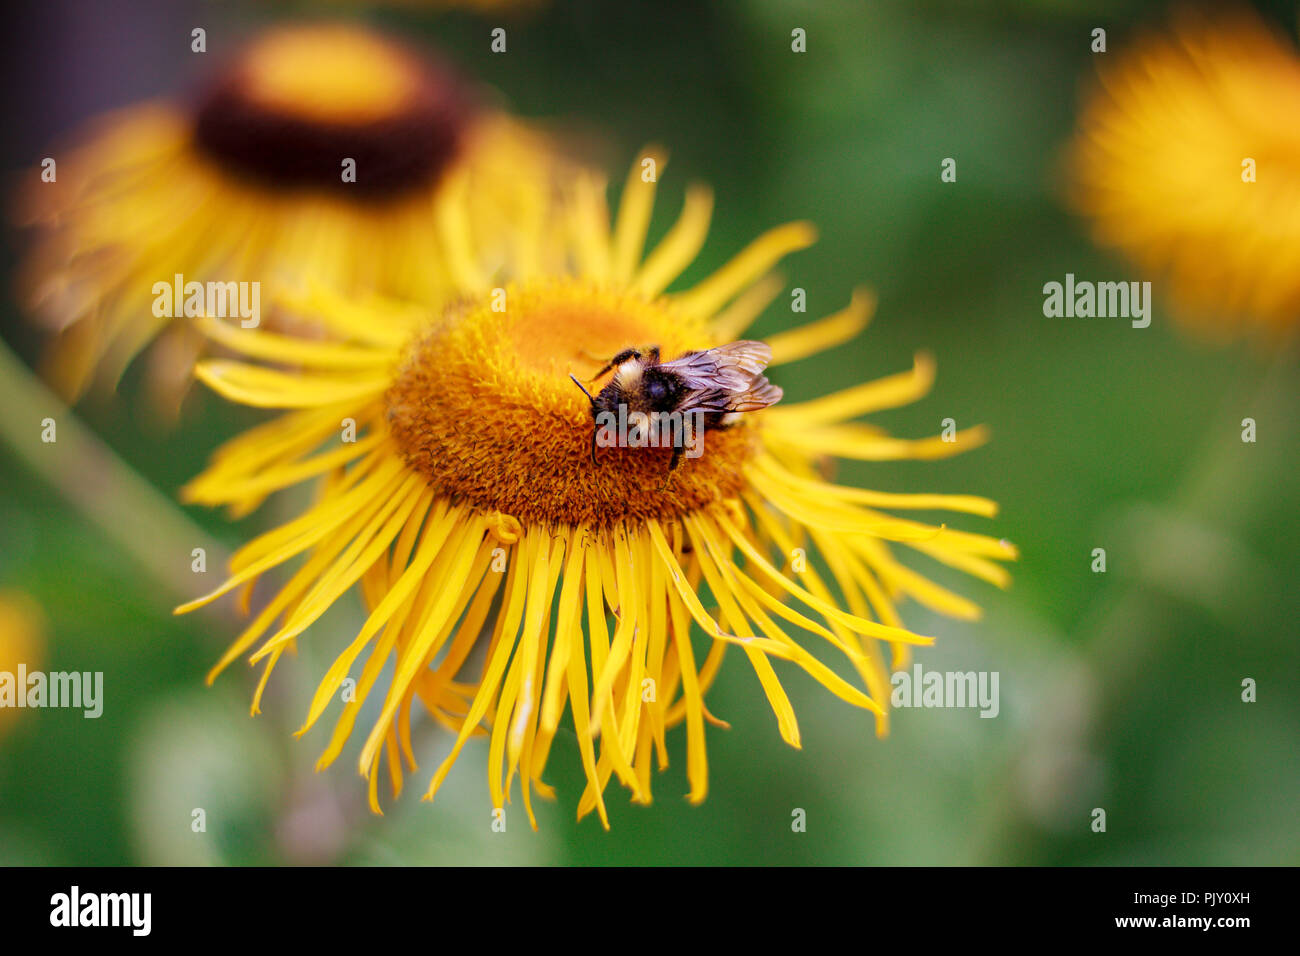 Honey Bee in Sunflower Stock Photo